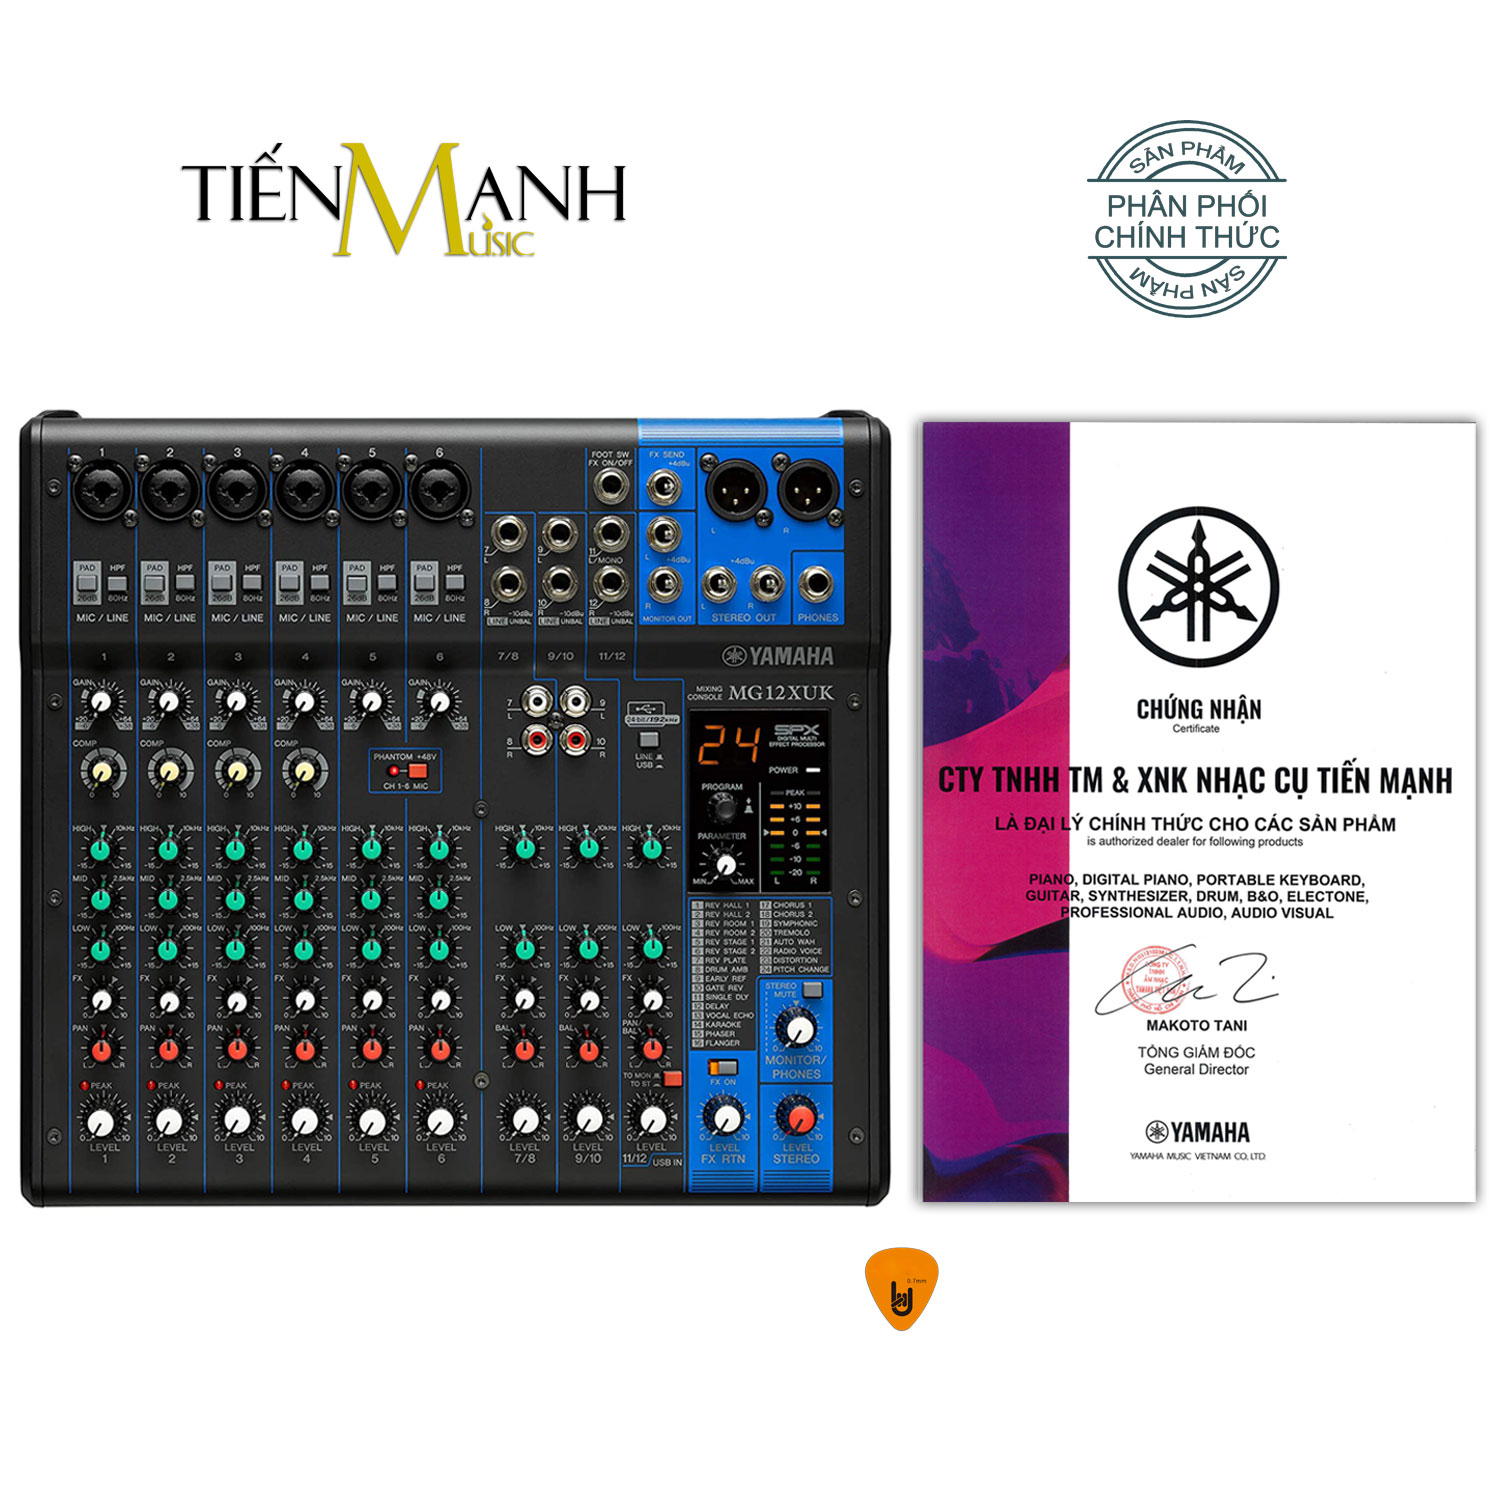 Yamaha MG12XUK Soundcard kiêm Bàn Trộn Mixer Interface Compact Stereo Mixing Console Phòng Thu Studio Mix MG12 Hàng Chính Hãng - Kèm Móng Gẩy DreamMaker